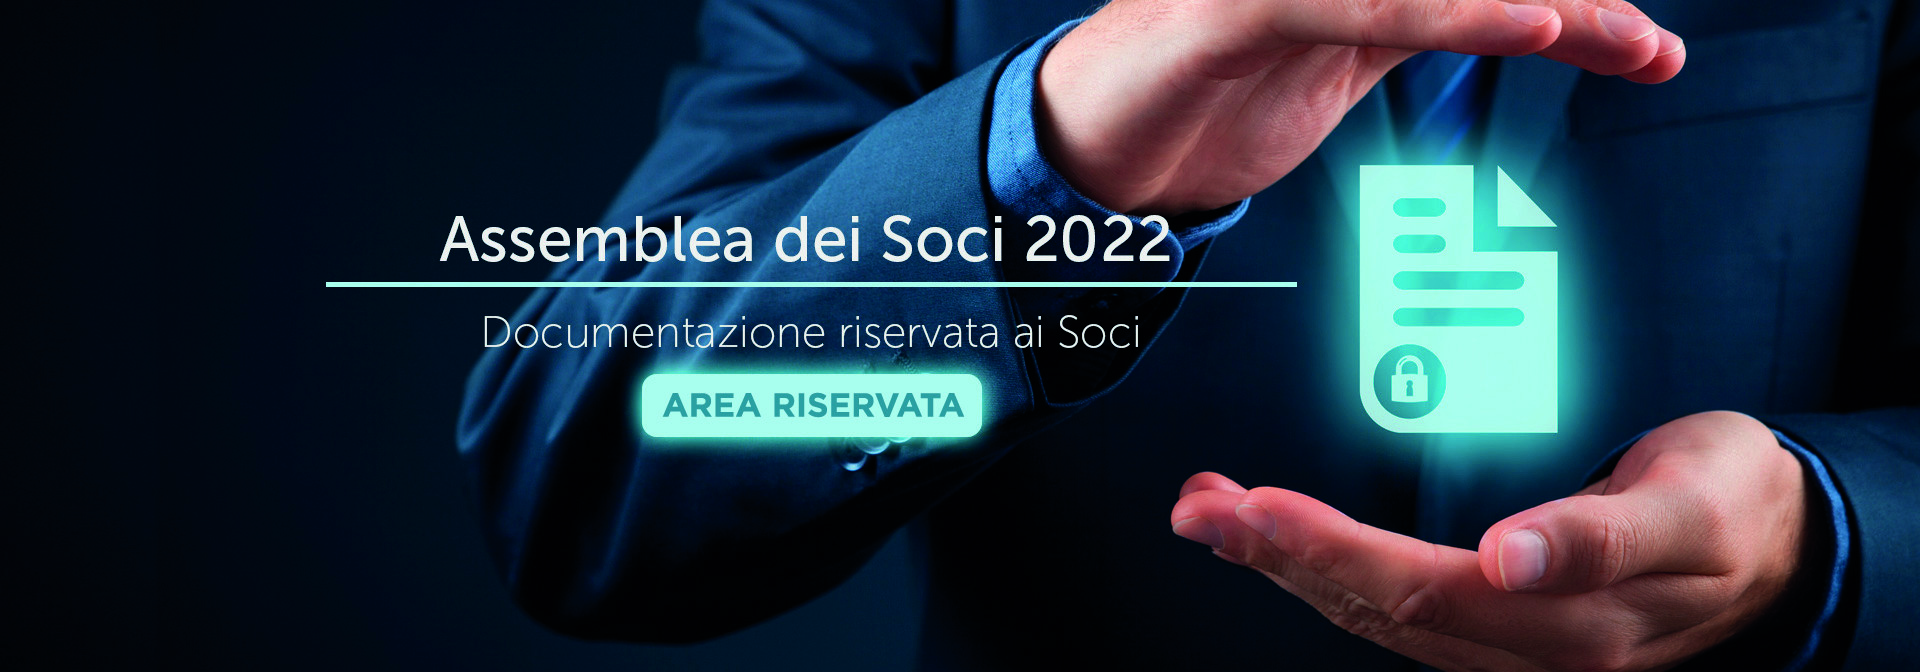 banner ASSEMBLEA SOCI 2022